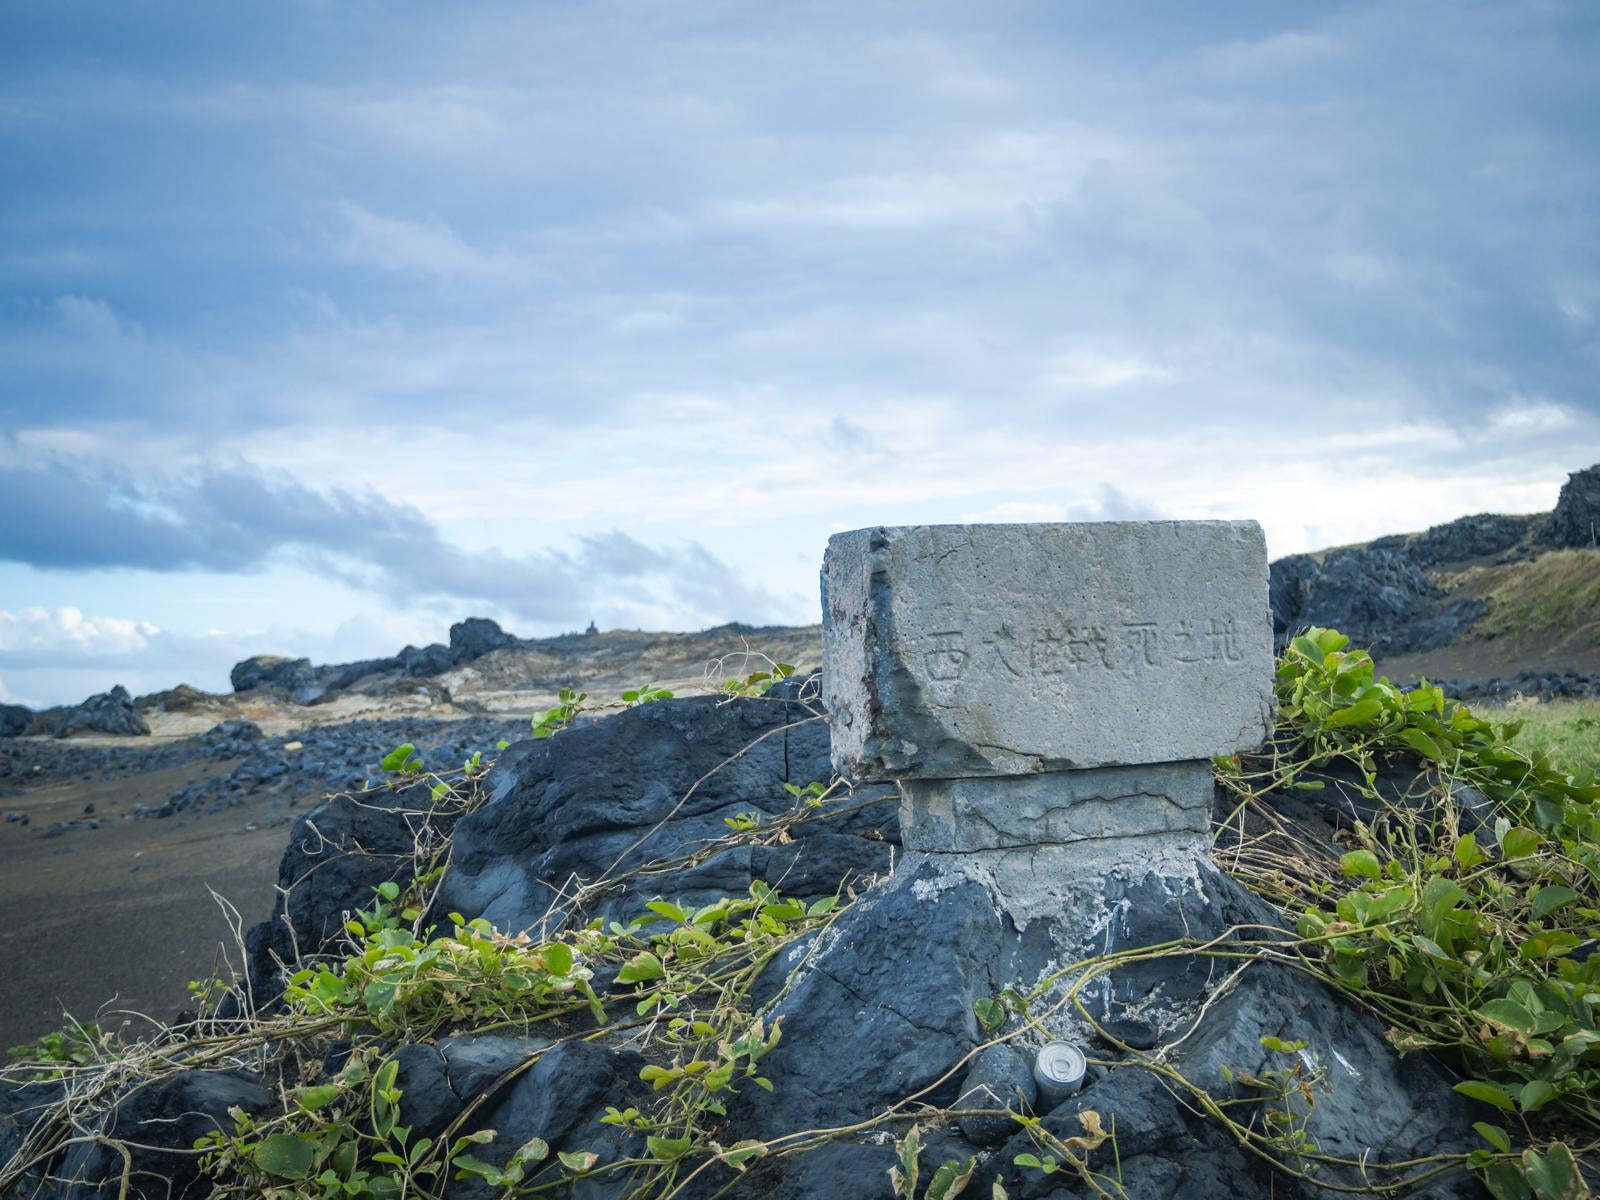 「背後の丘の上に小さく見えるもう一つの西大佐の碑と西大佐戦死の碑」の写真